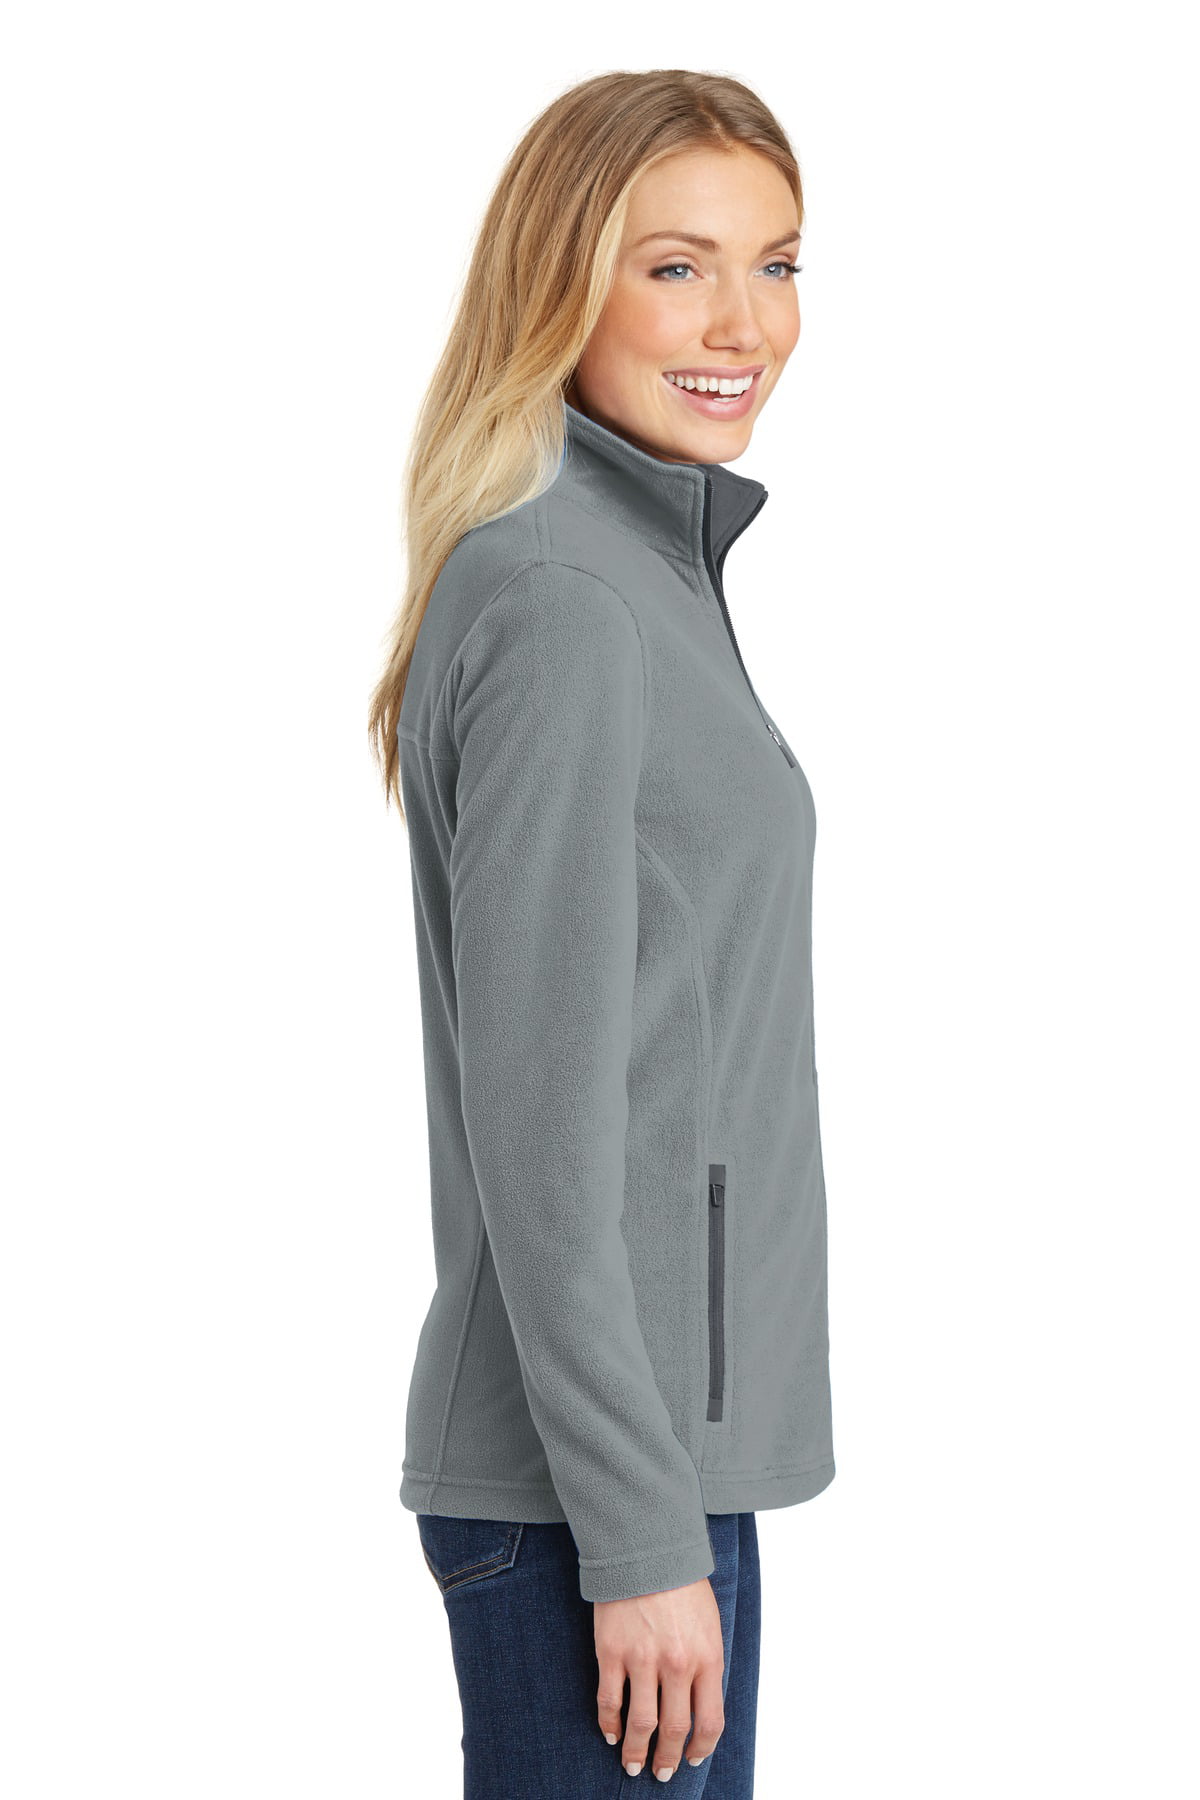 Port Authority® L233 Ladies Summit Fleece Full-Zip Jacket – Valley